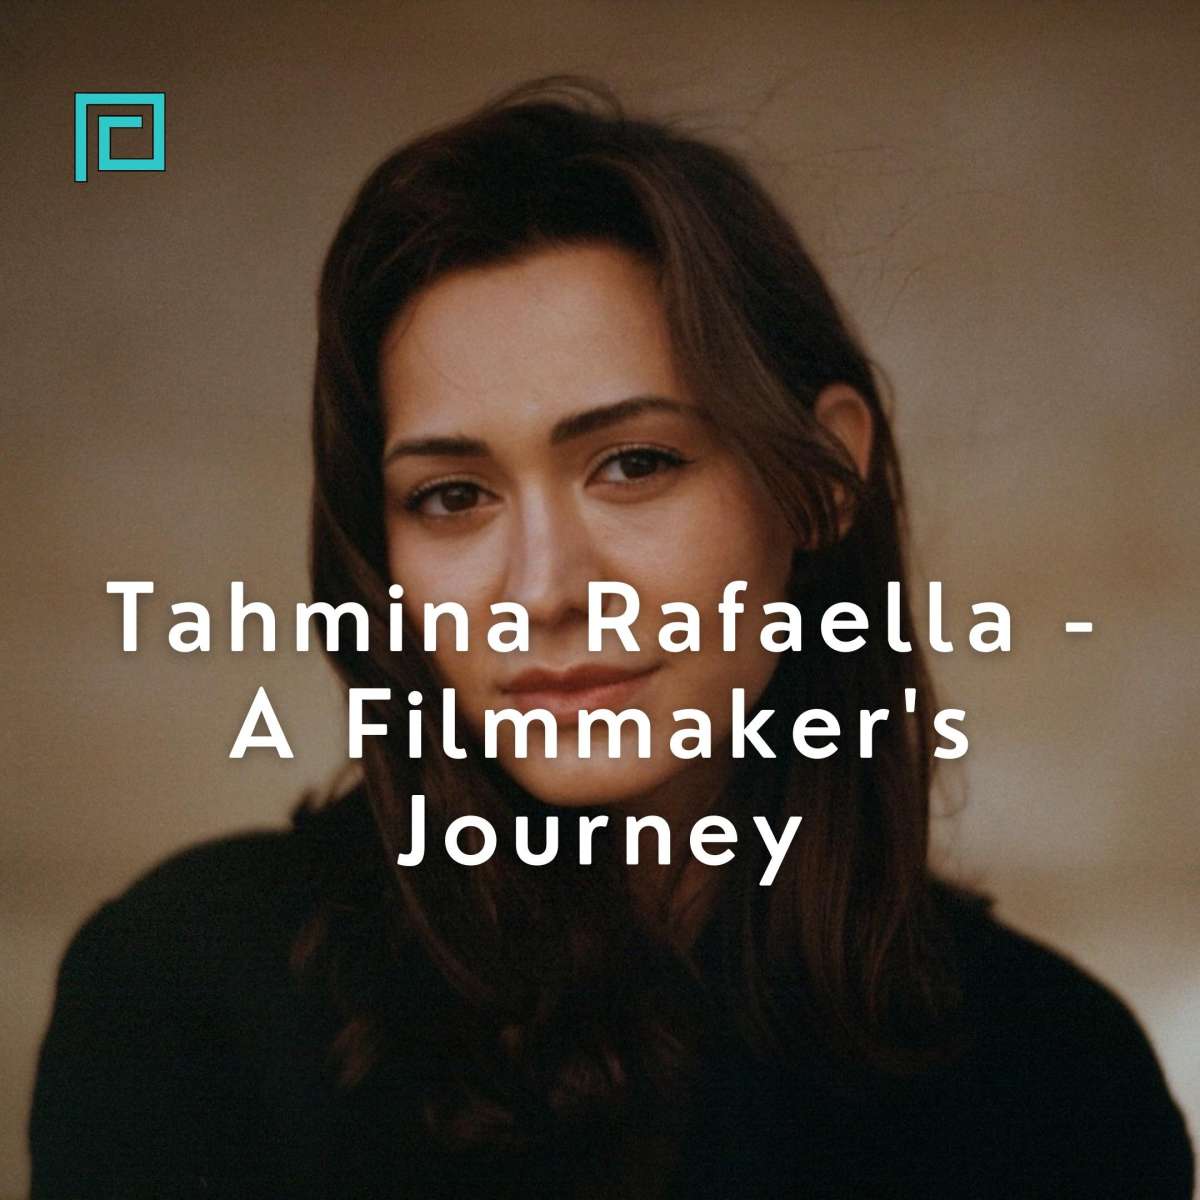 Tahmina Rafaella - A Filmmaker's Journey